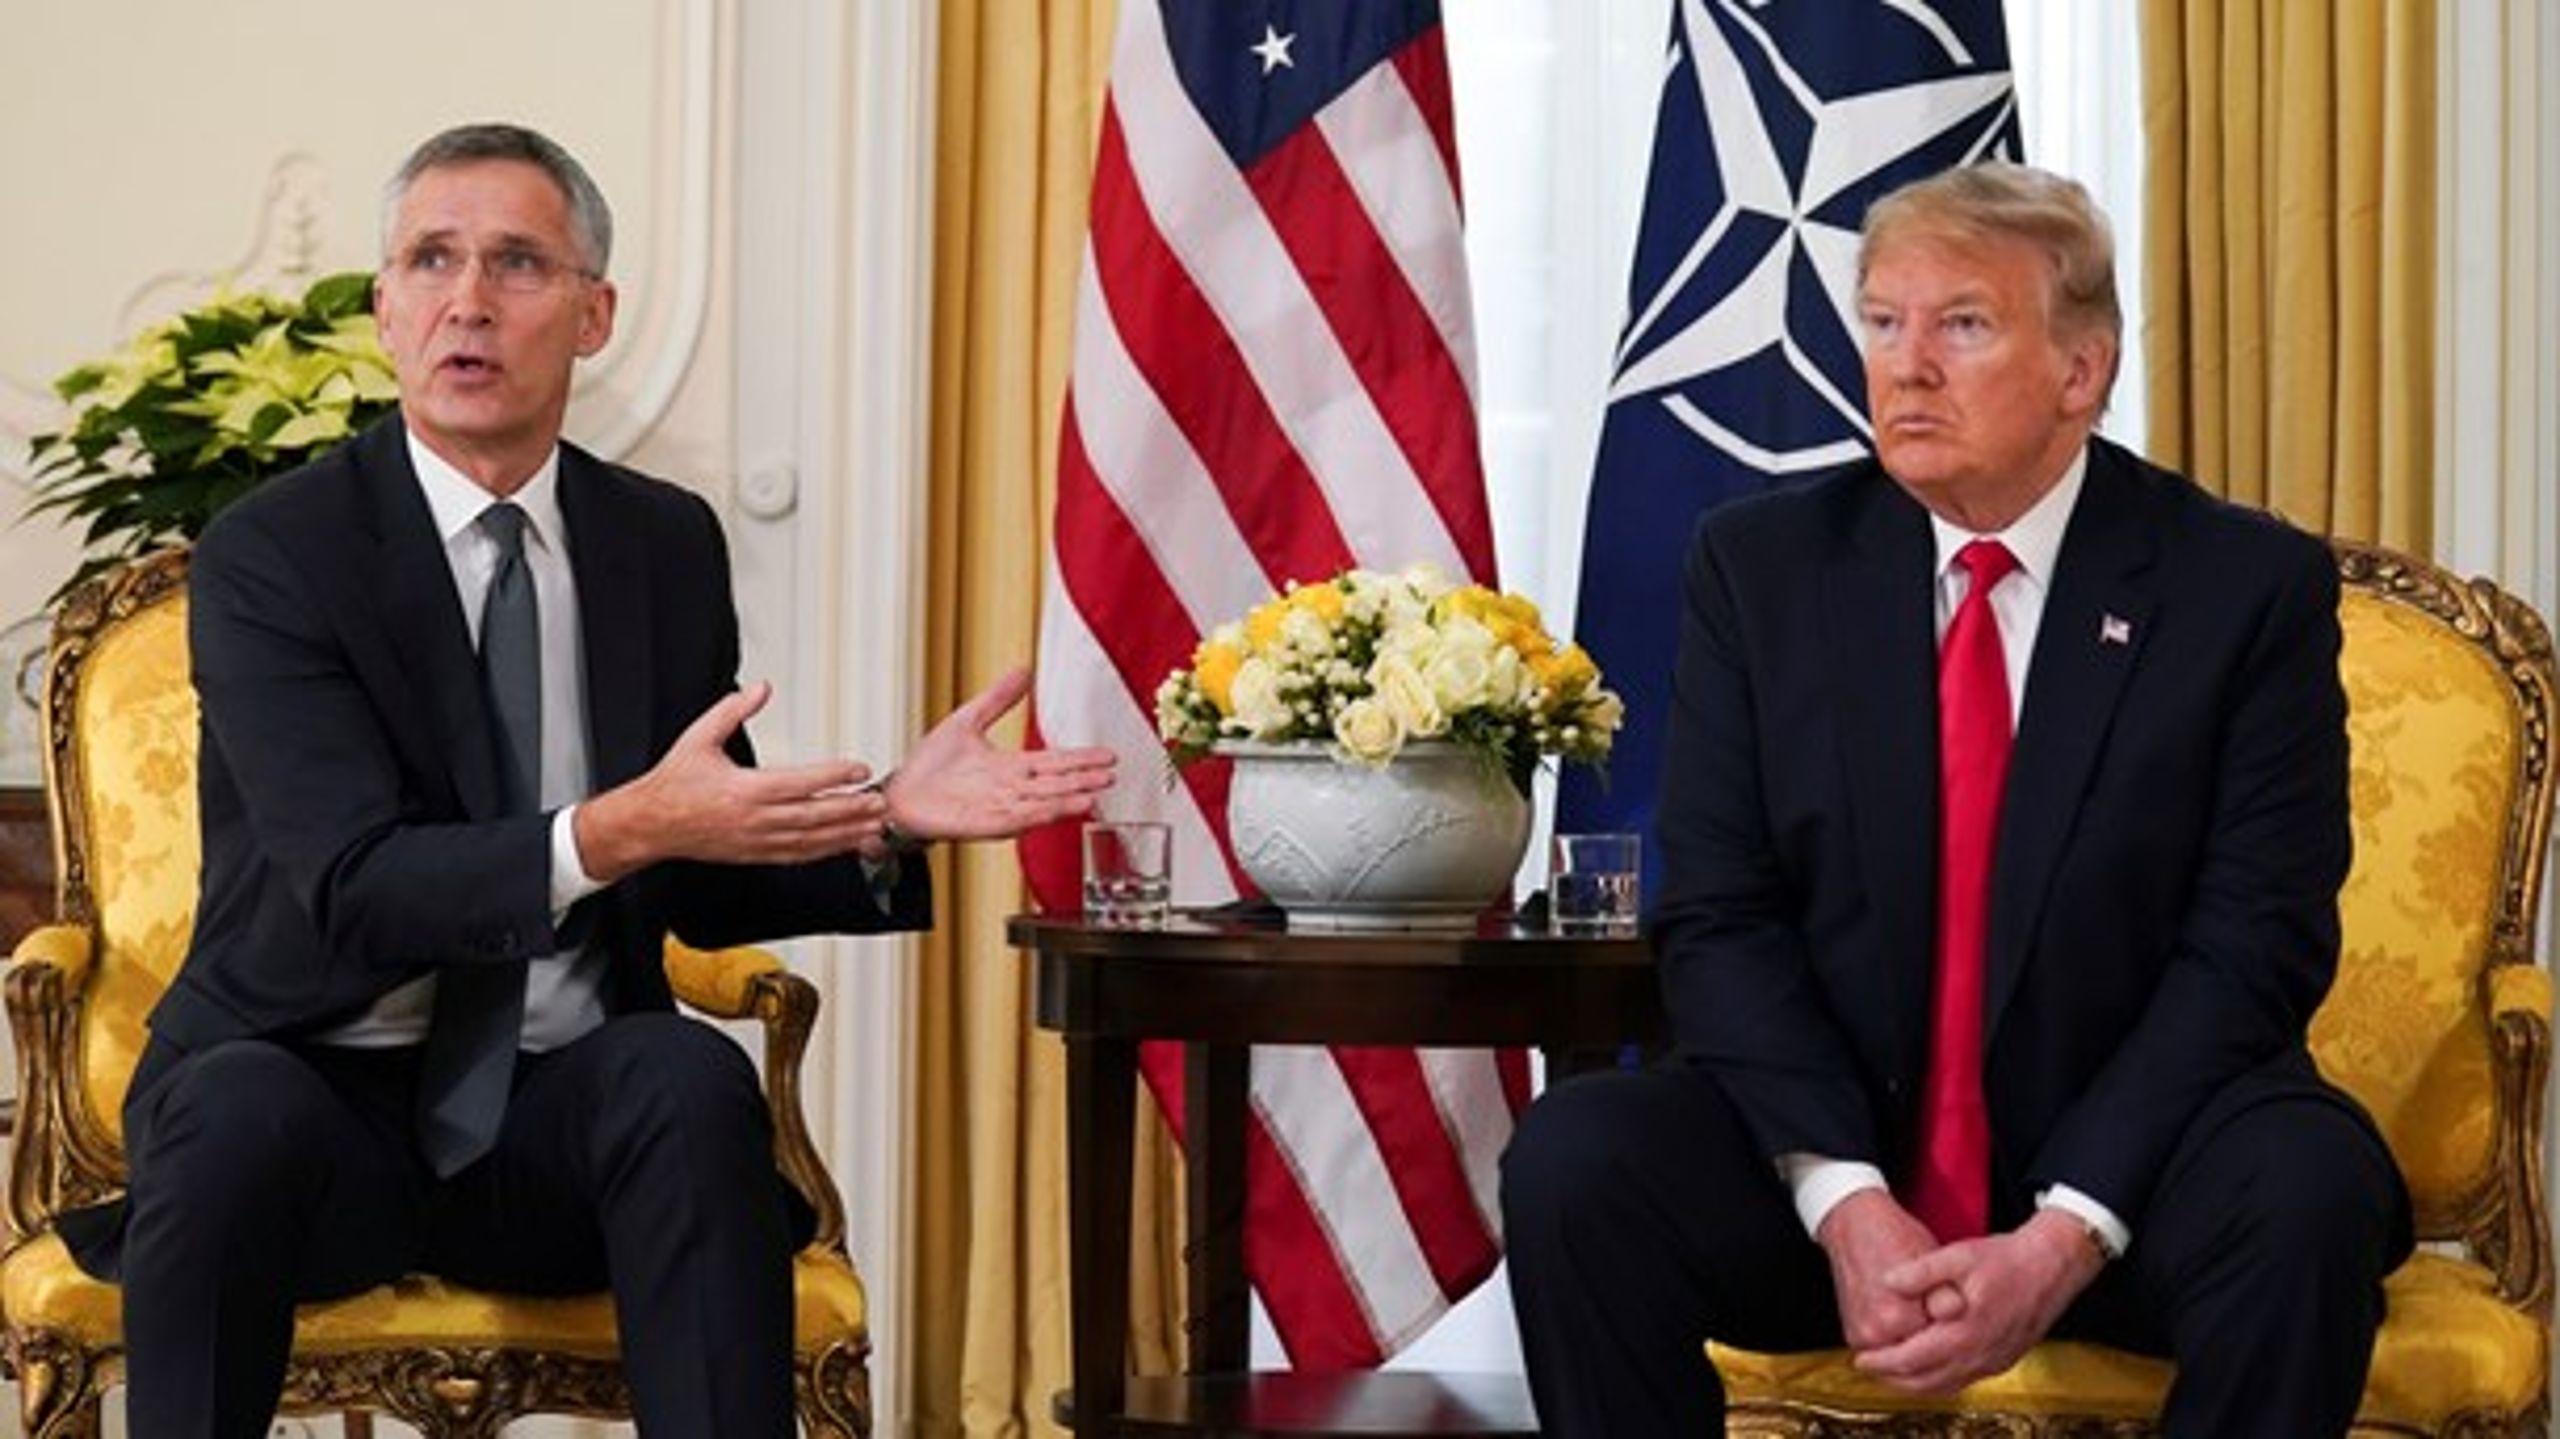 Det var måske ikke tilfældigt, at Donald Trump forinden topmødet i London havde inviteret Natos generalsekretær, Jens Stoltenberg, til møde, mener Preben Bonnén.